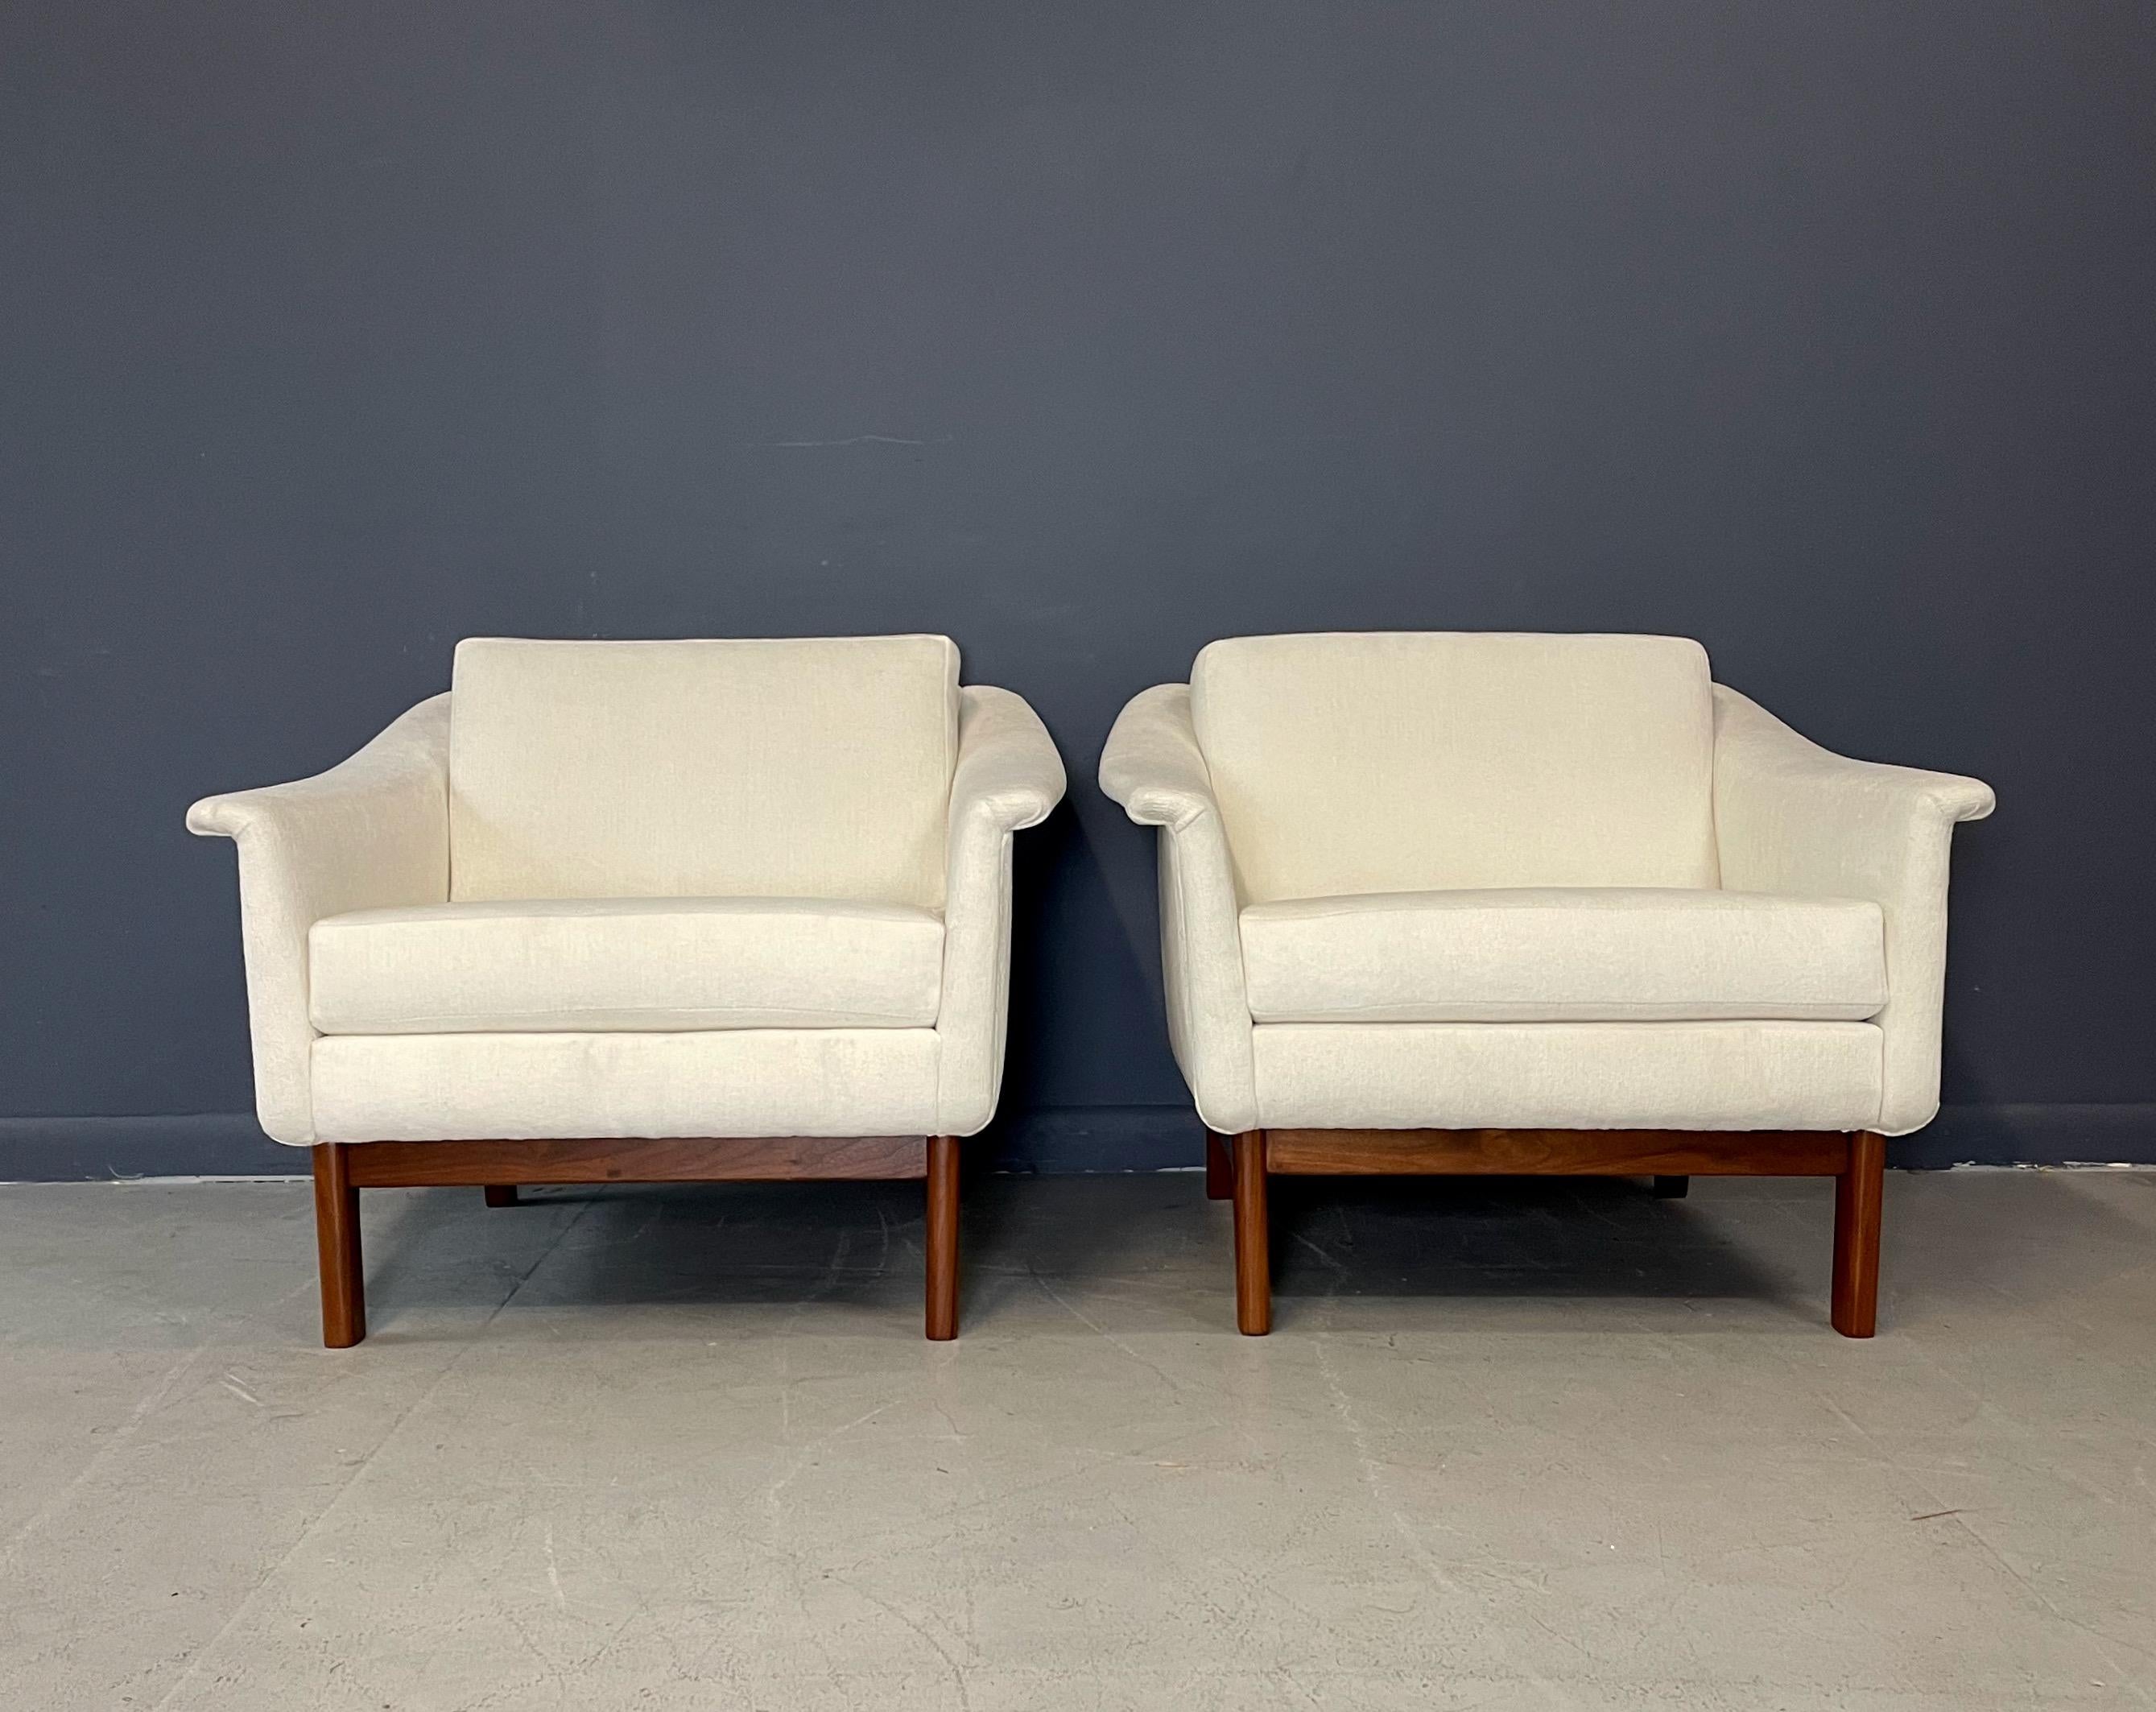 Schöner Loungesessel 'Pasadena', entworfen von Folke Ohlsson und hergestellt von DUX Ljungs Industrier, Schweden. Es handelt sich um einen sehr soliden Stuhl mit einem strukturierten weißen Samtbezug und einem Teakholzgestell, das in Perfektion neu